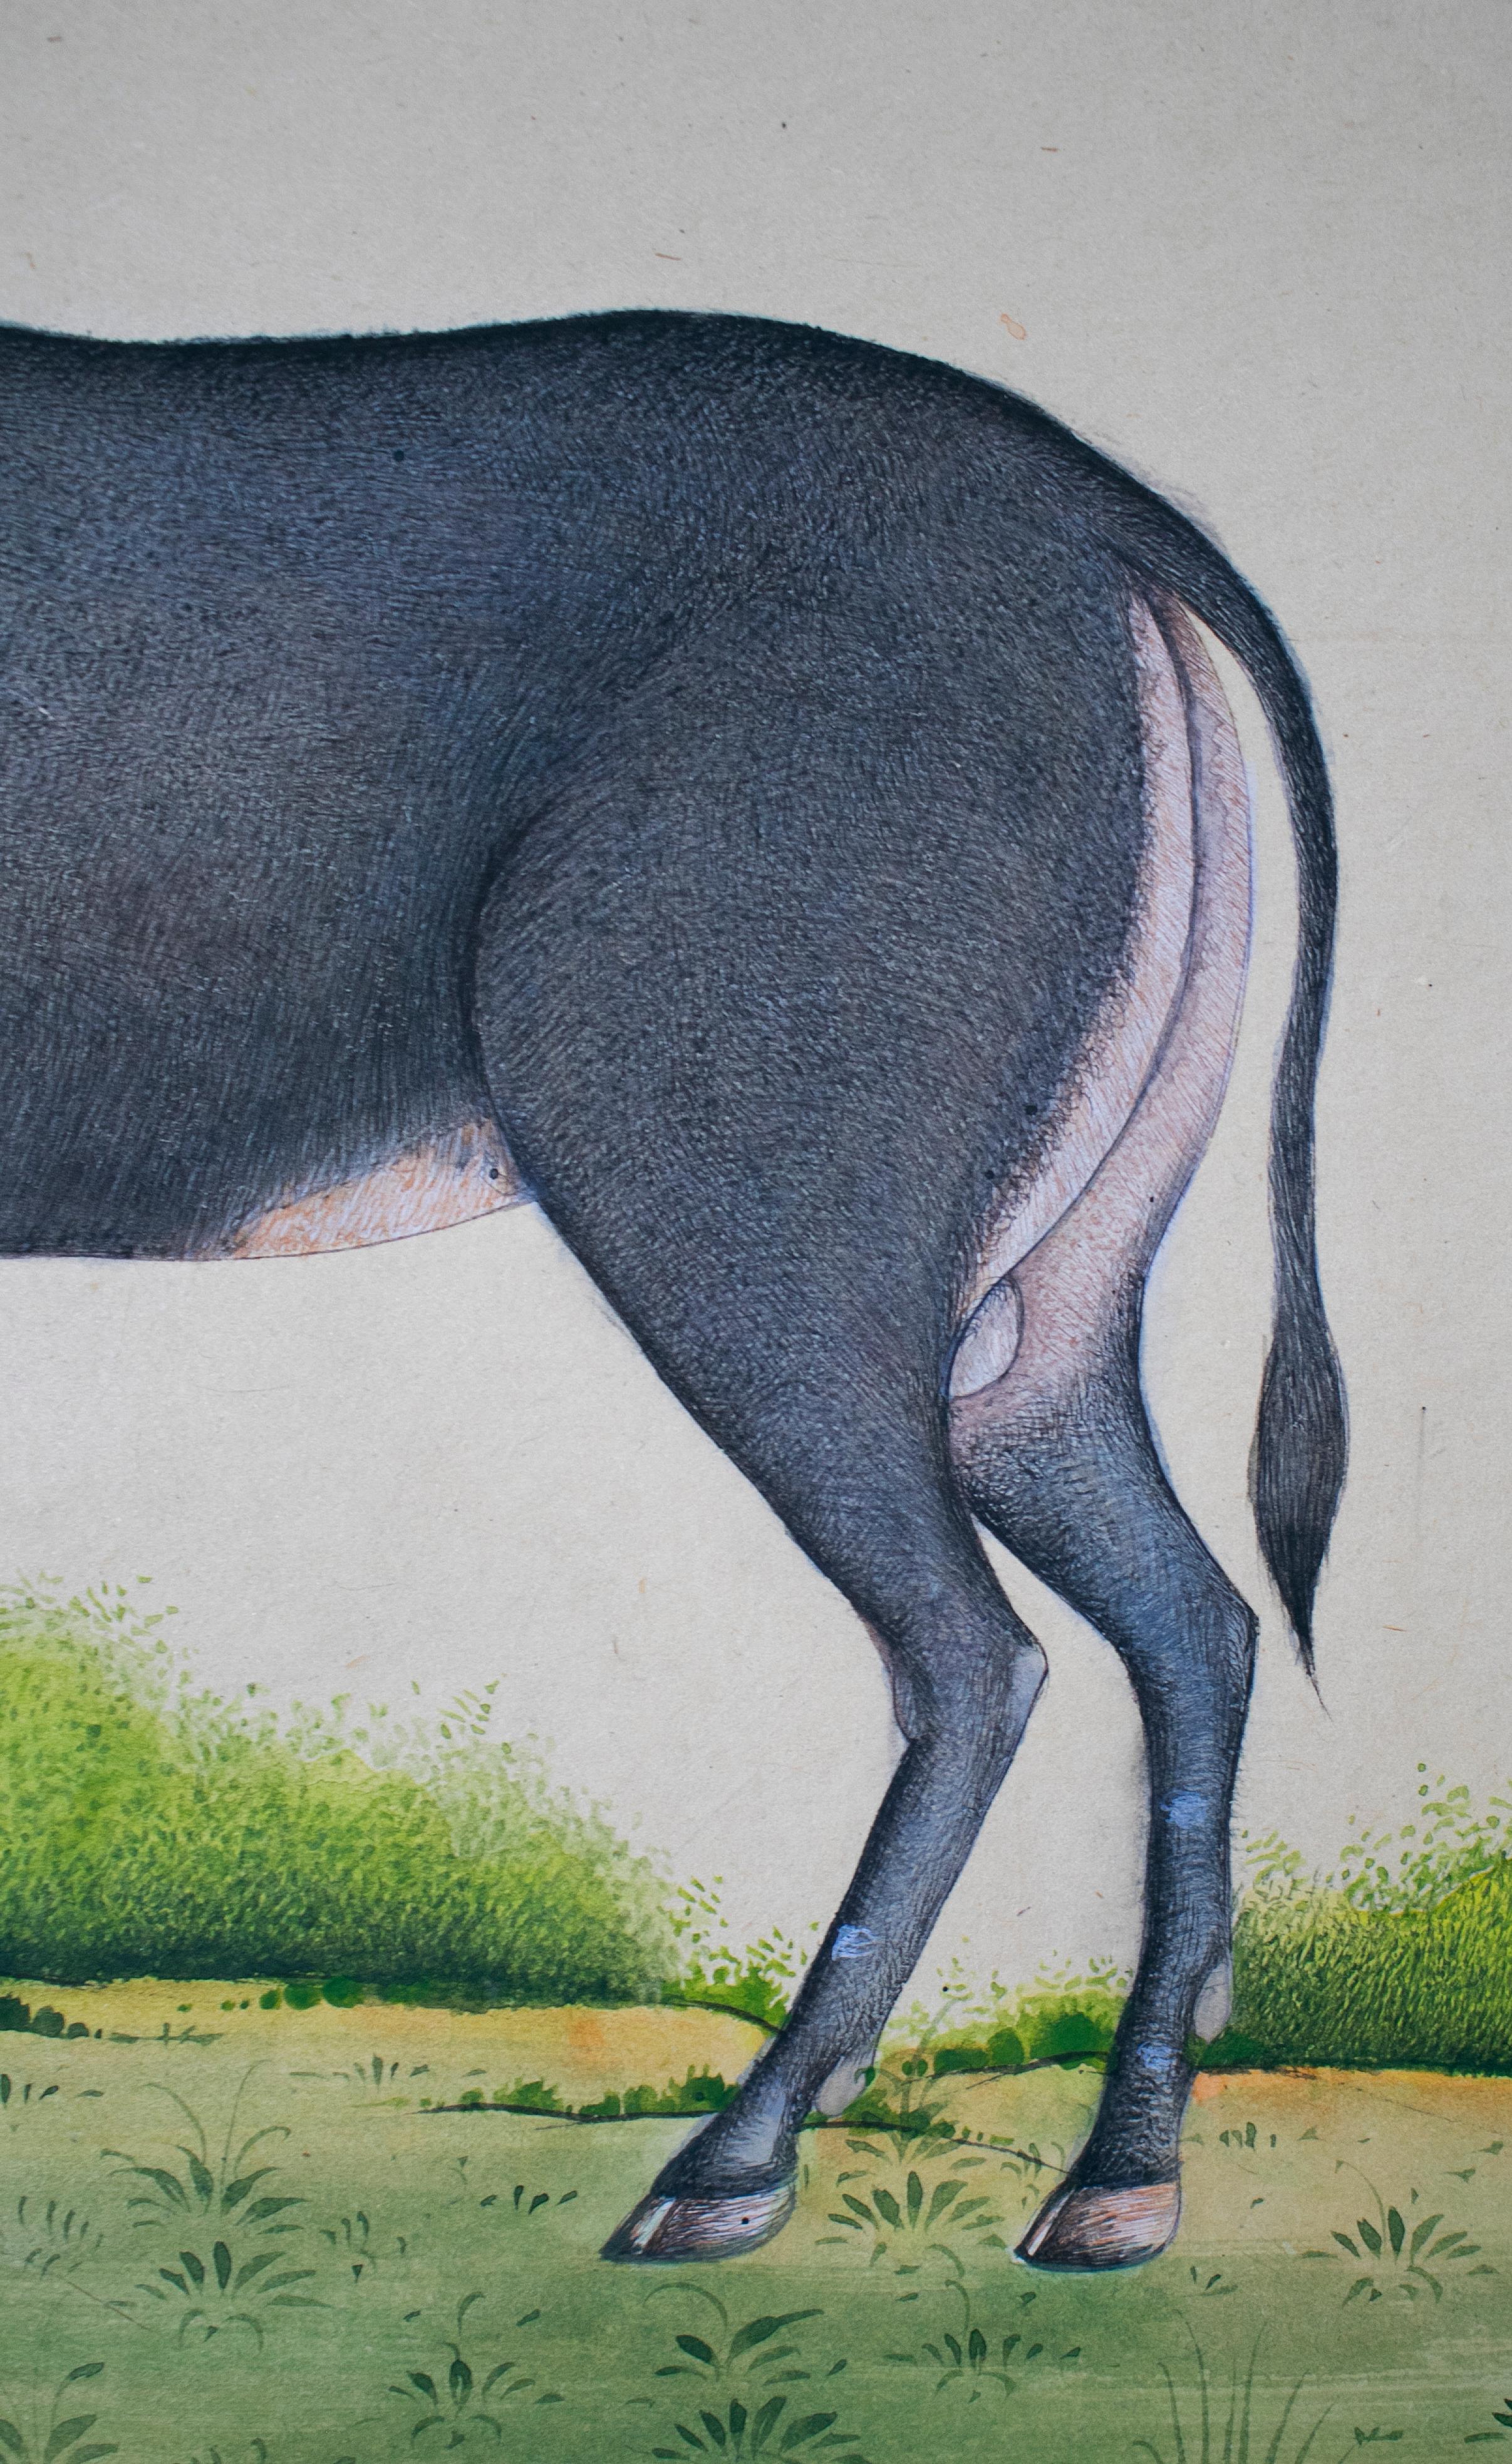 Papier dessin sur papier indien des années 1970 représentant une chèvre en vente